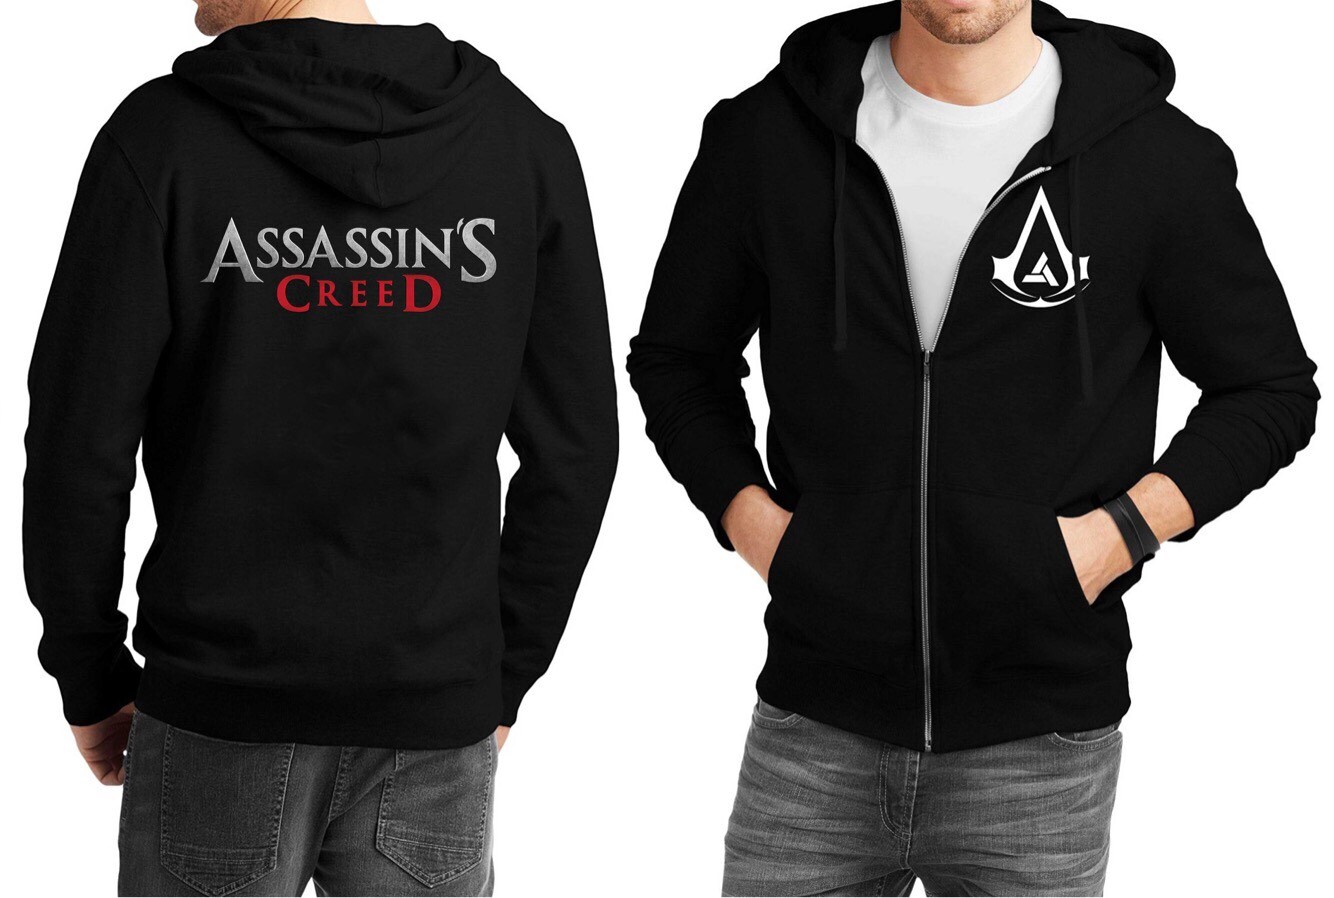 Assassins Creed Merch